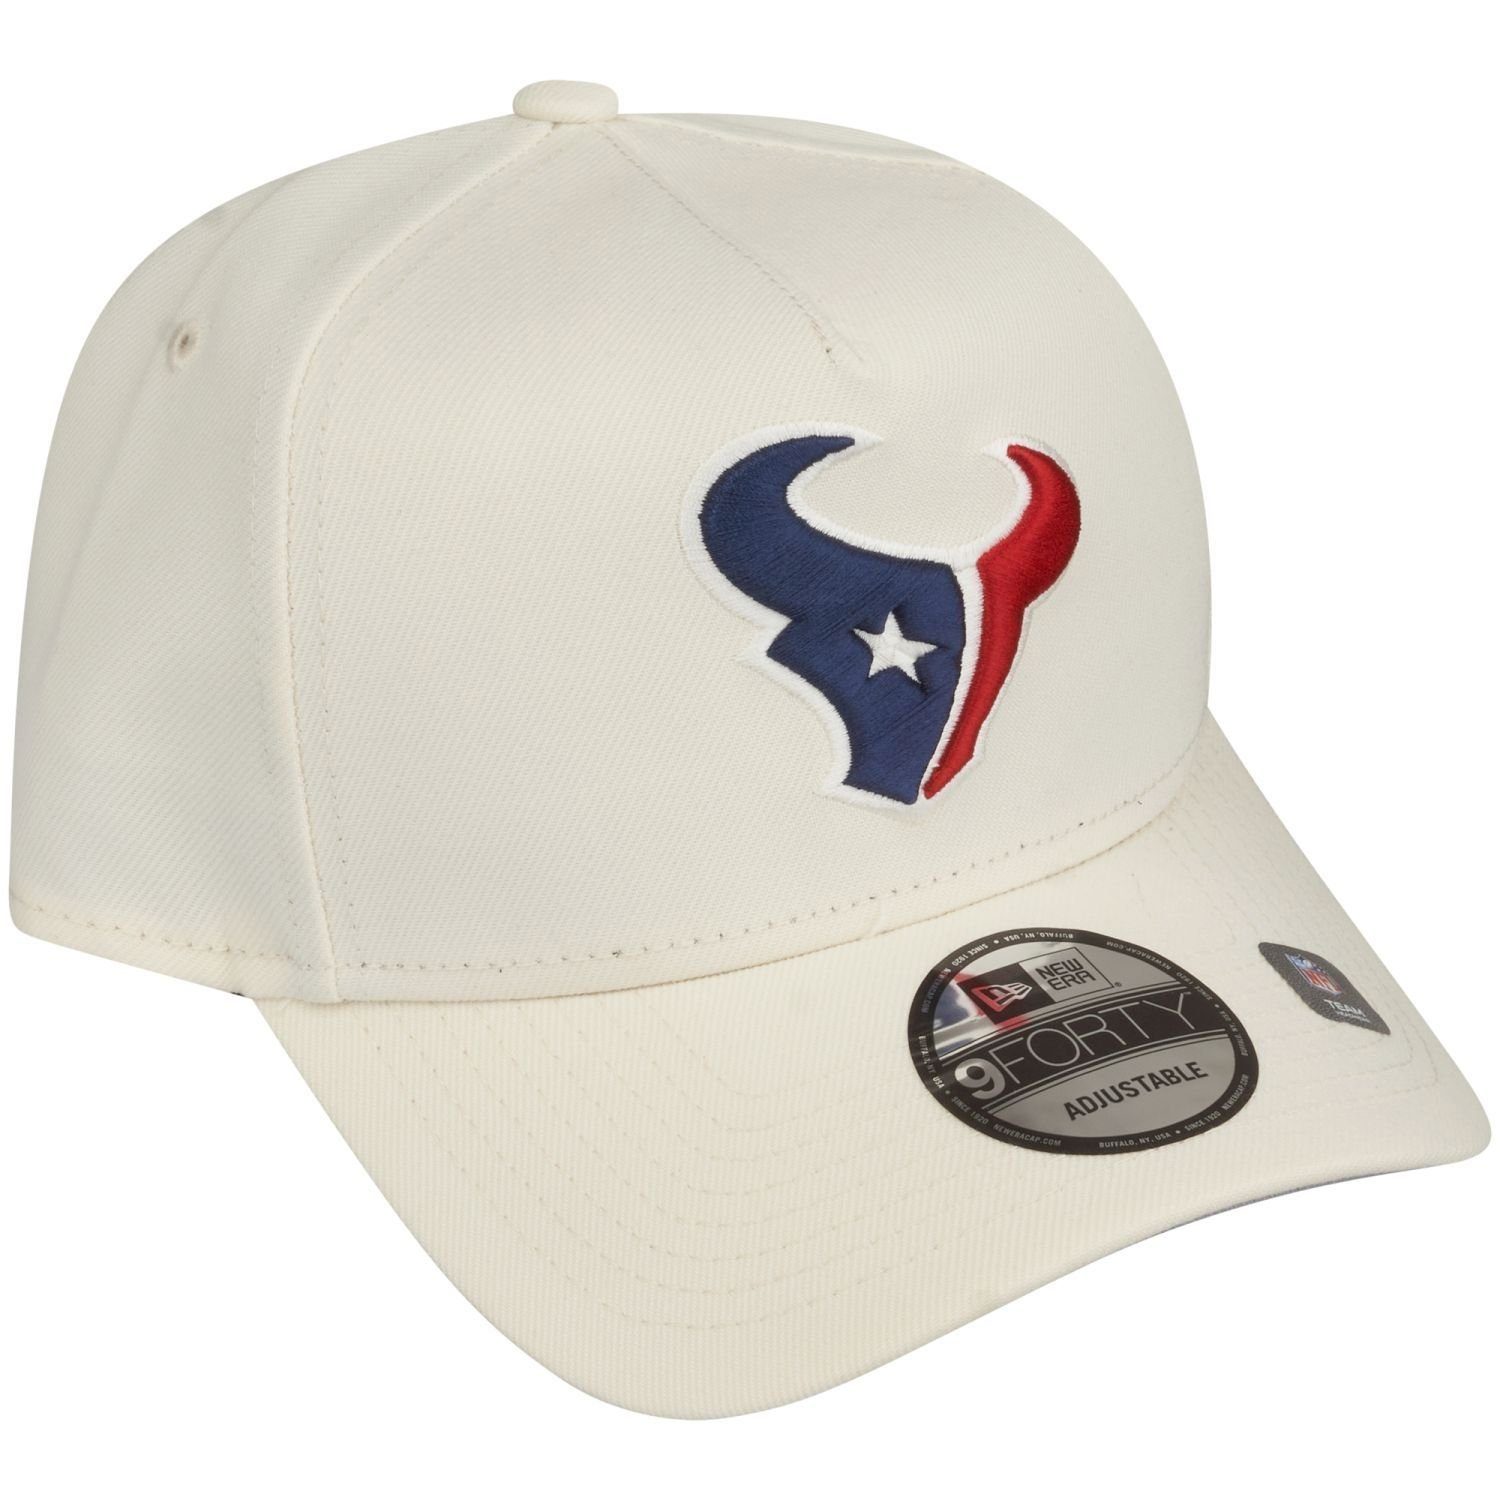 Houston NFL Trucker white New 9Forty Trucker Era chrome AFrame TEAMS Texans Cap